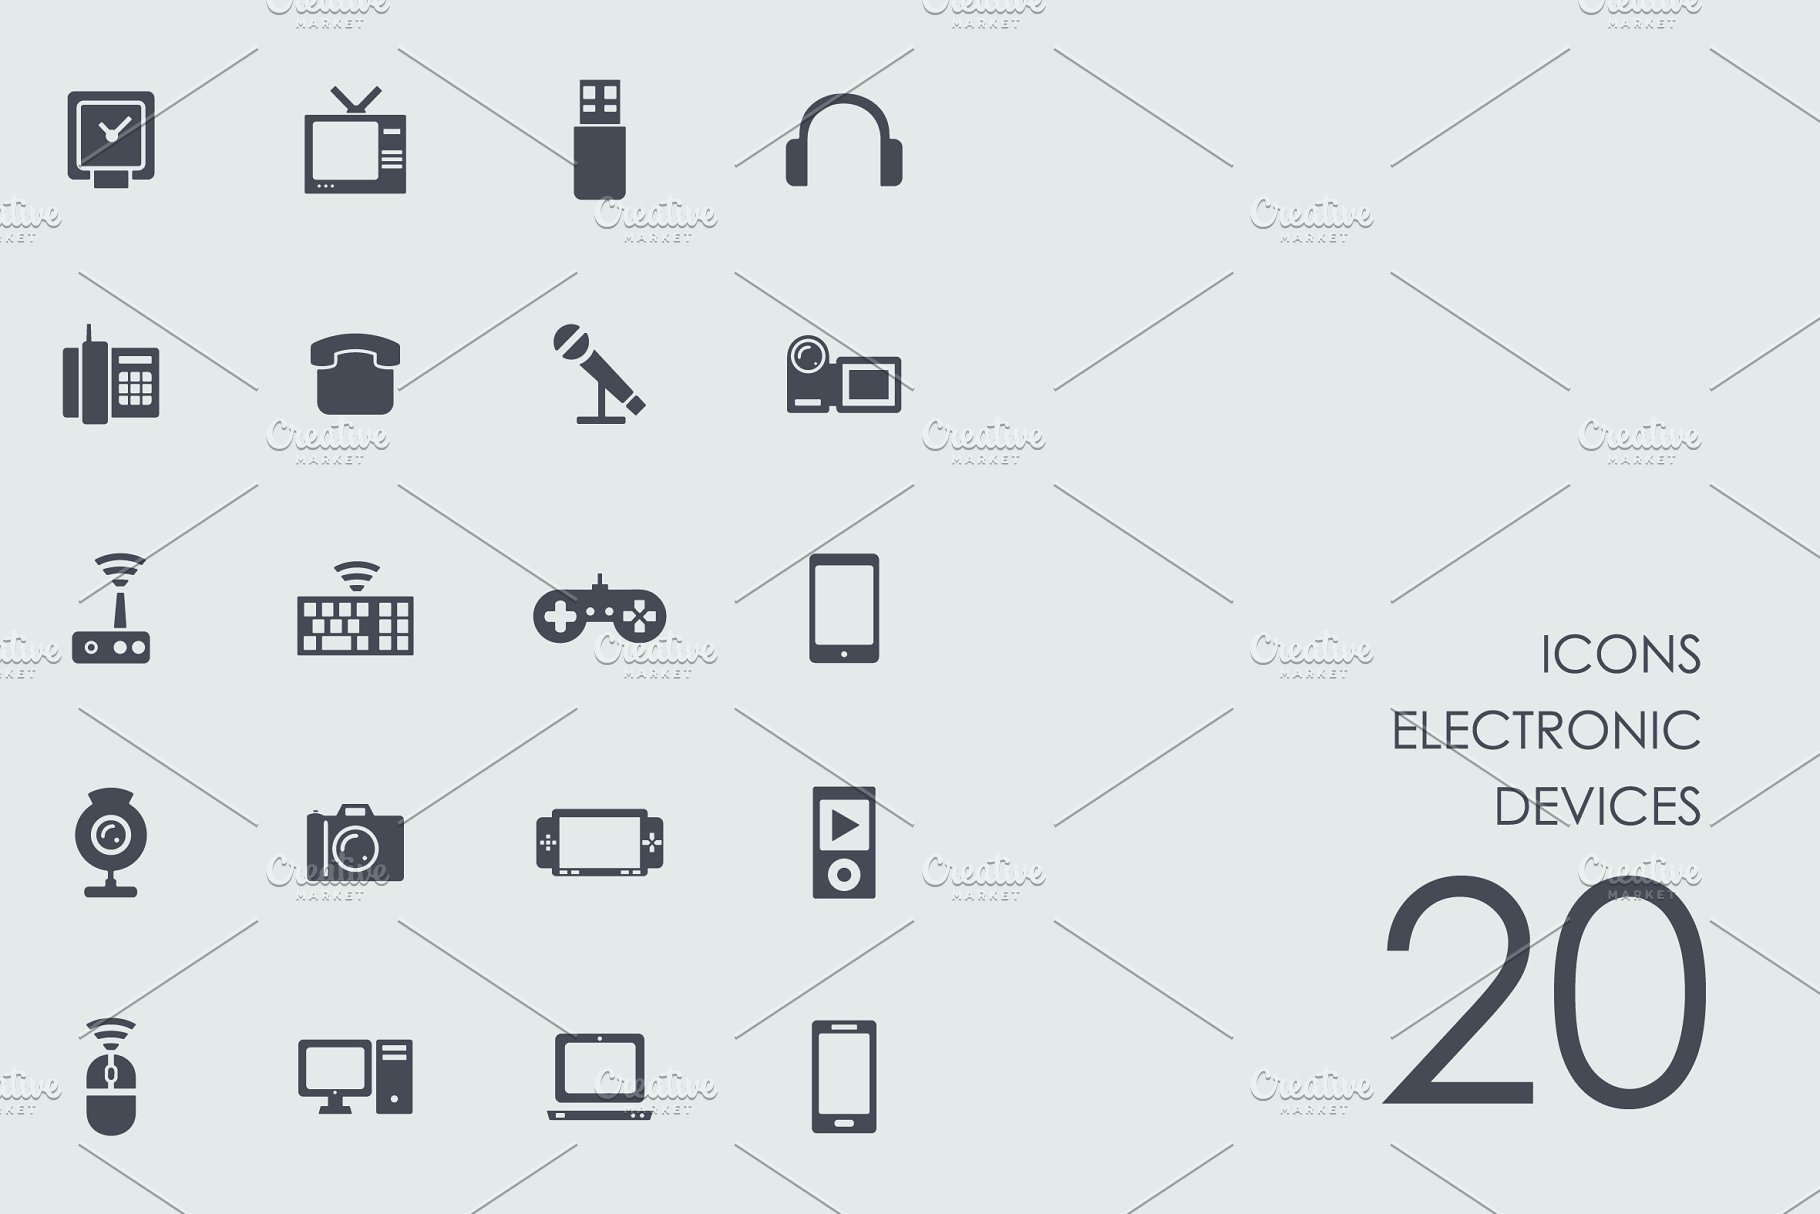 电子设备主题图标集 Electronic devices icons插图